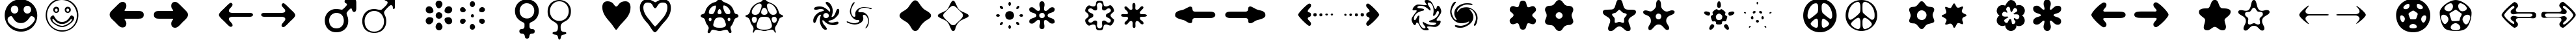 Пример написания английского алфавита шрифтом Distro II Bats